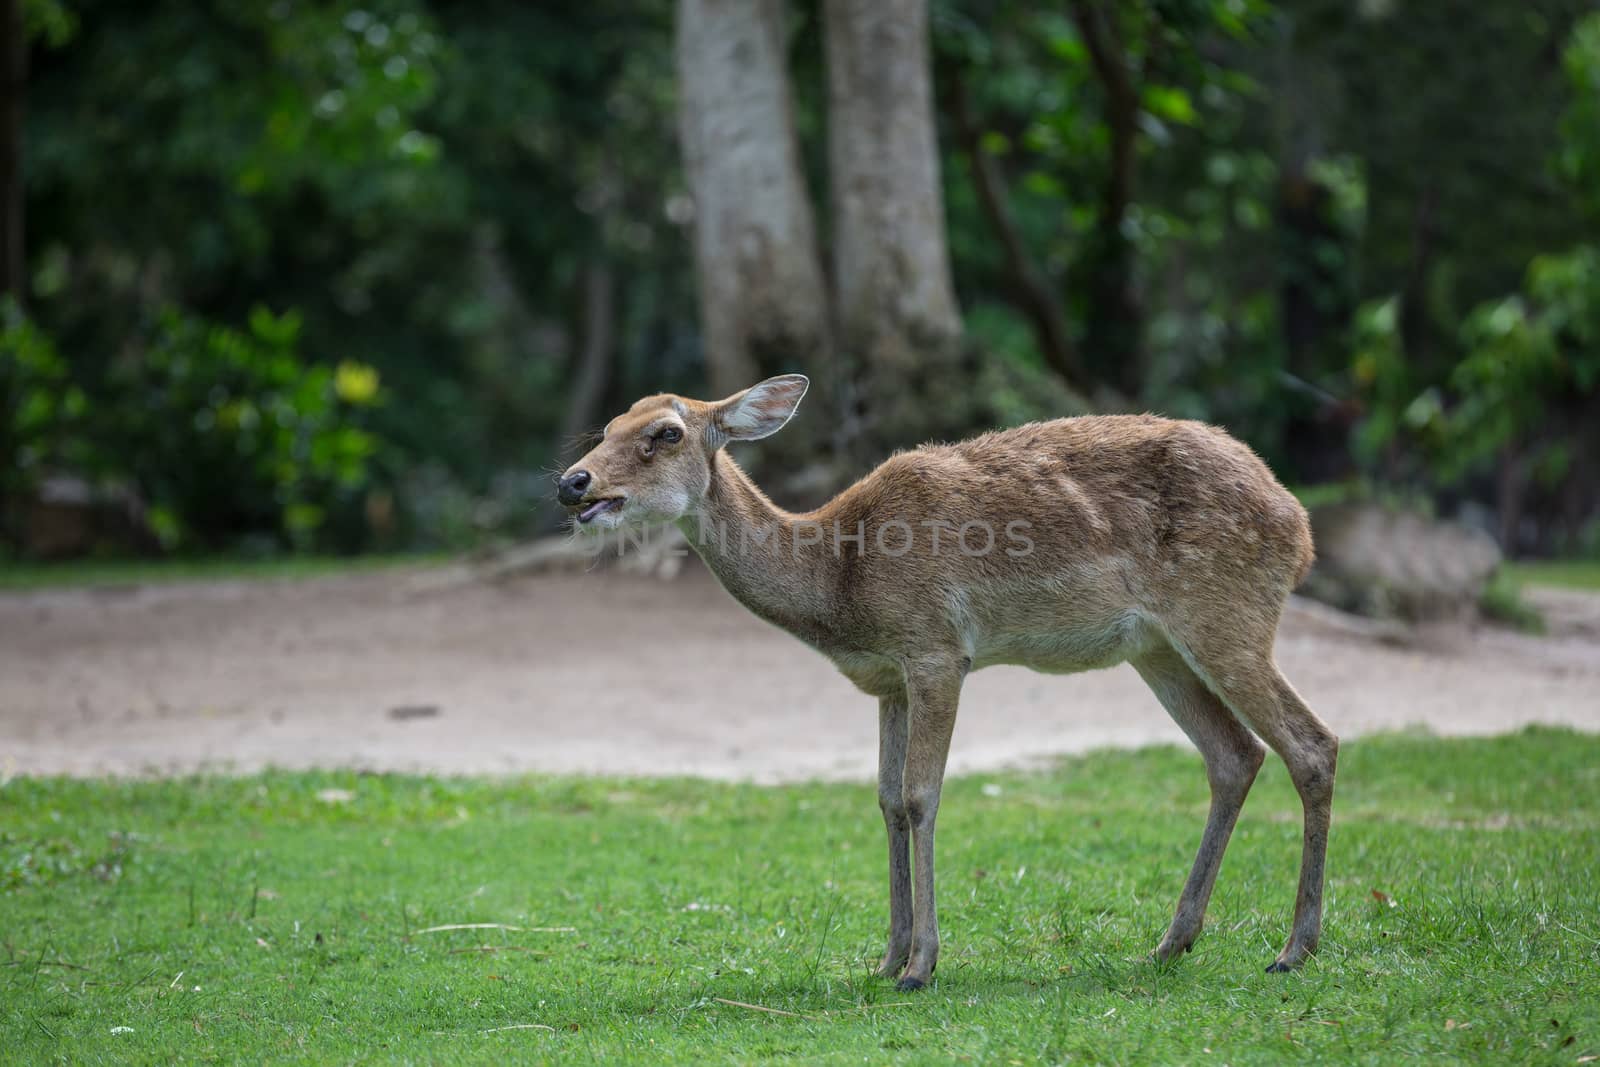 antelope deer eating on the grass by aotweerawit